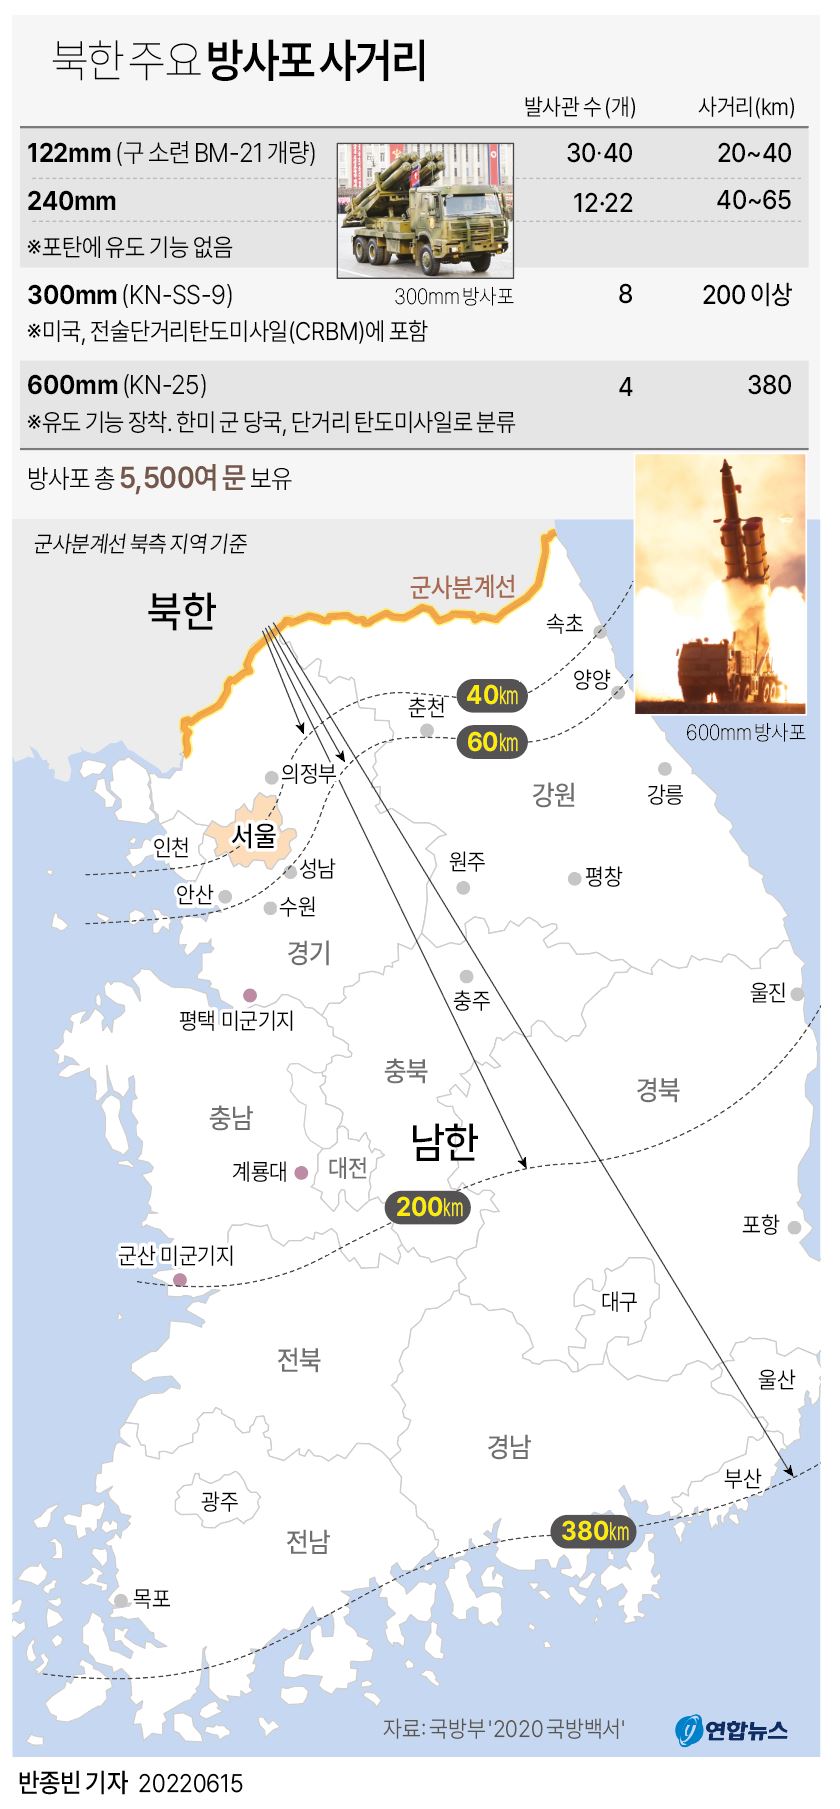 الجيش: كوريا الشمالية تطلق قذائف مدفعية قبيل تدريبات كورية-أمريكية مشتركة - 2